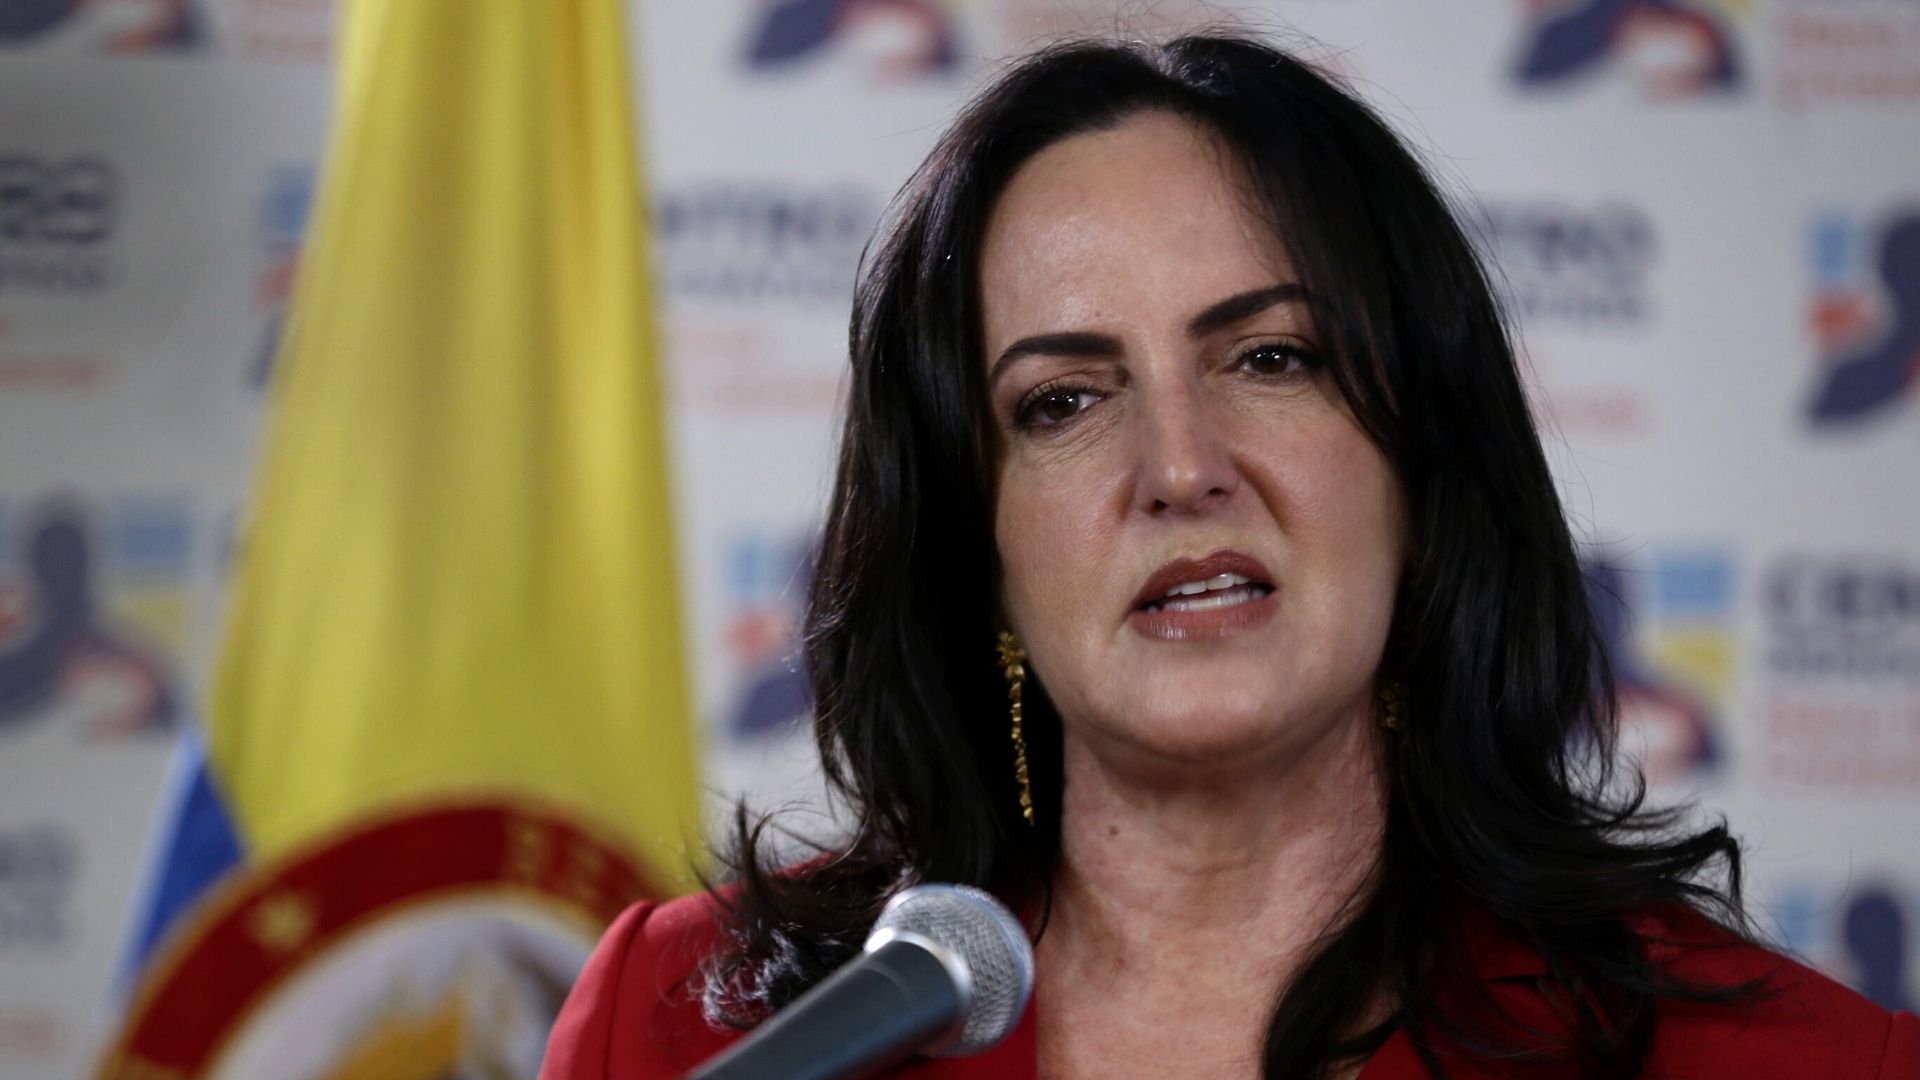 Polémica por discurso de María Fernanda Cabal: “Feministas, locas y feas, en pelotas y horribles”